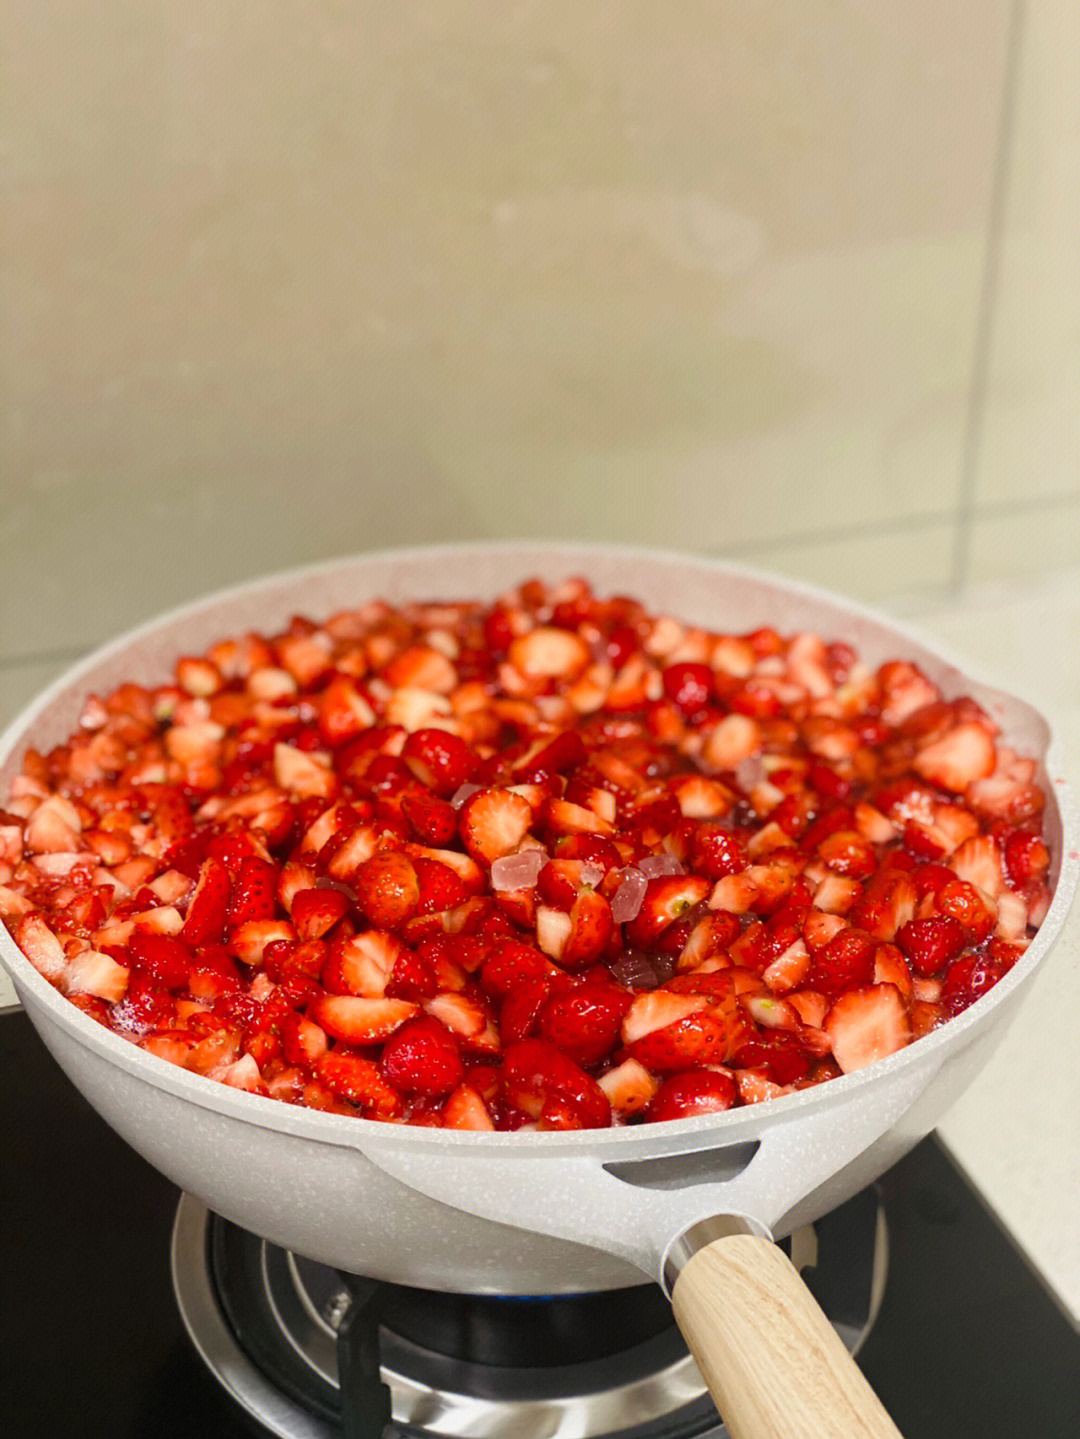 做法很简单 需要多一点耐心7815准备材料(如图量)草莓:5000克冰糖